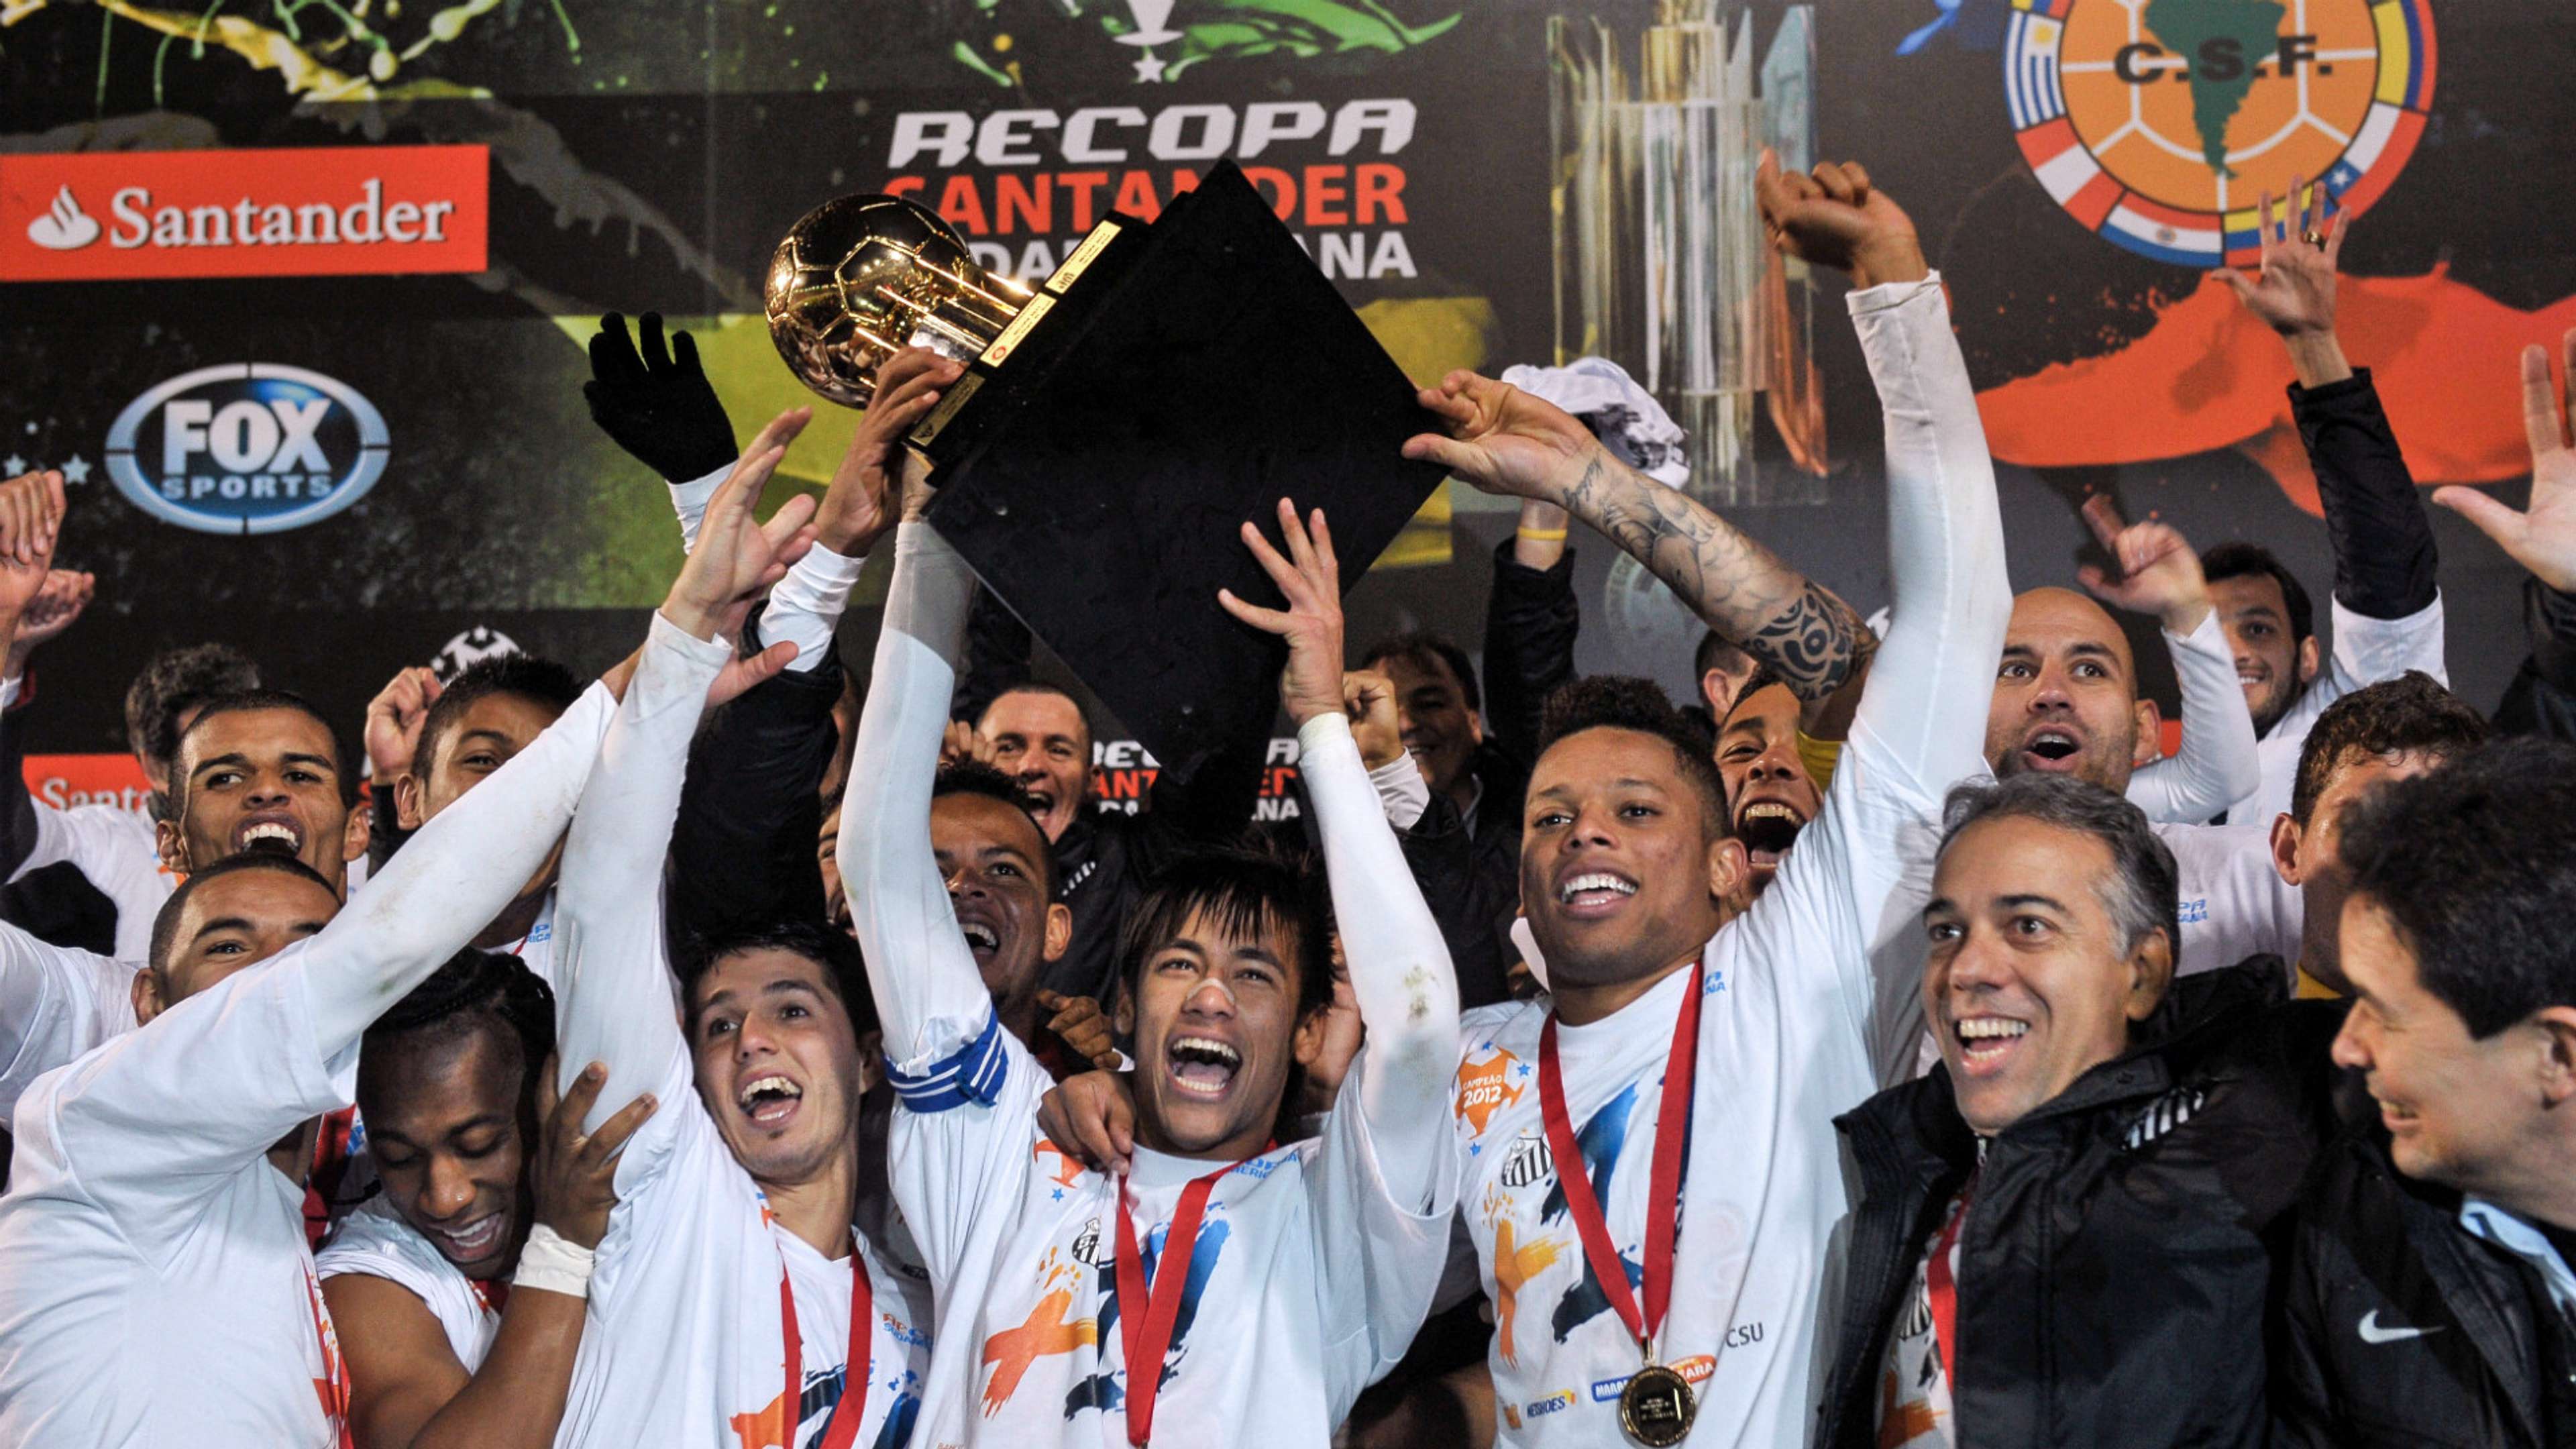 Santos Copa Libertadores champions 2011